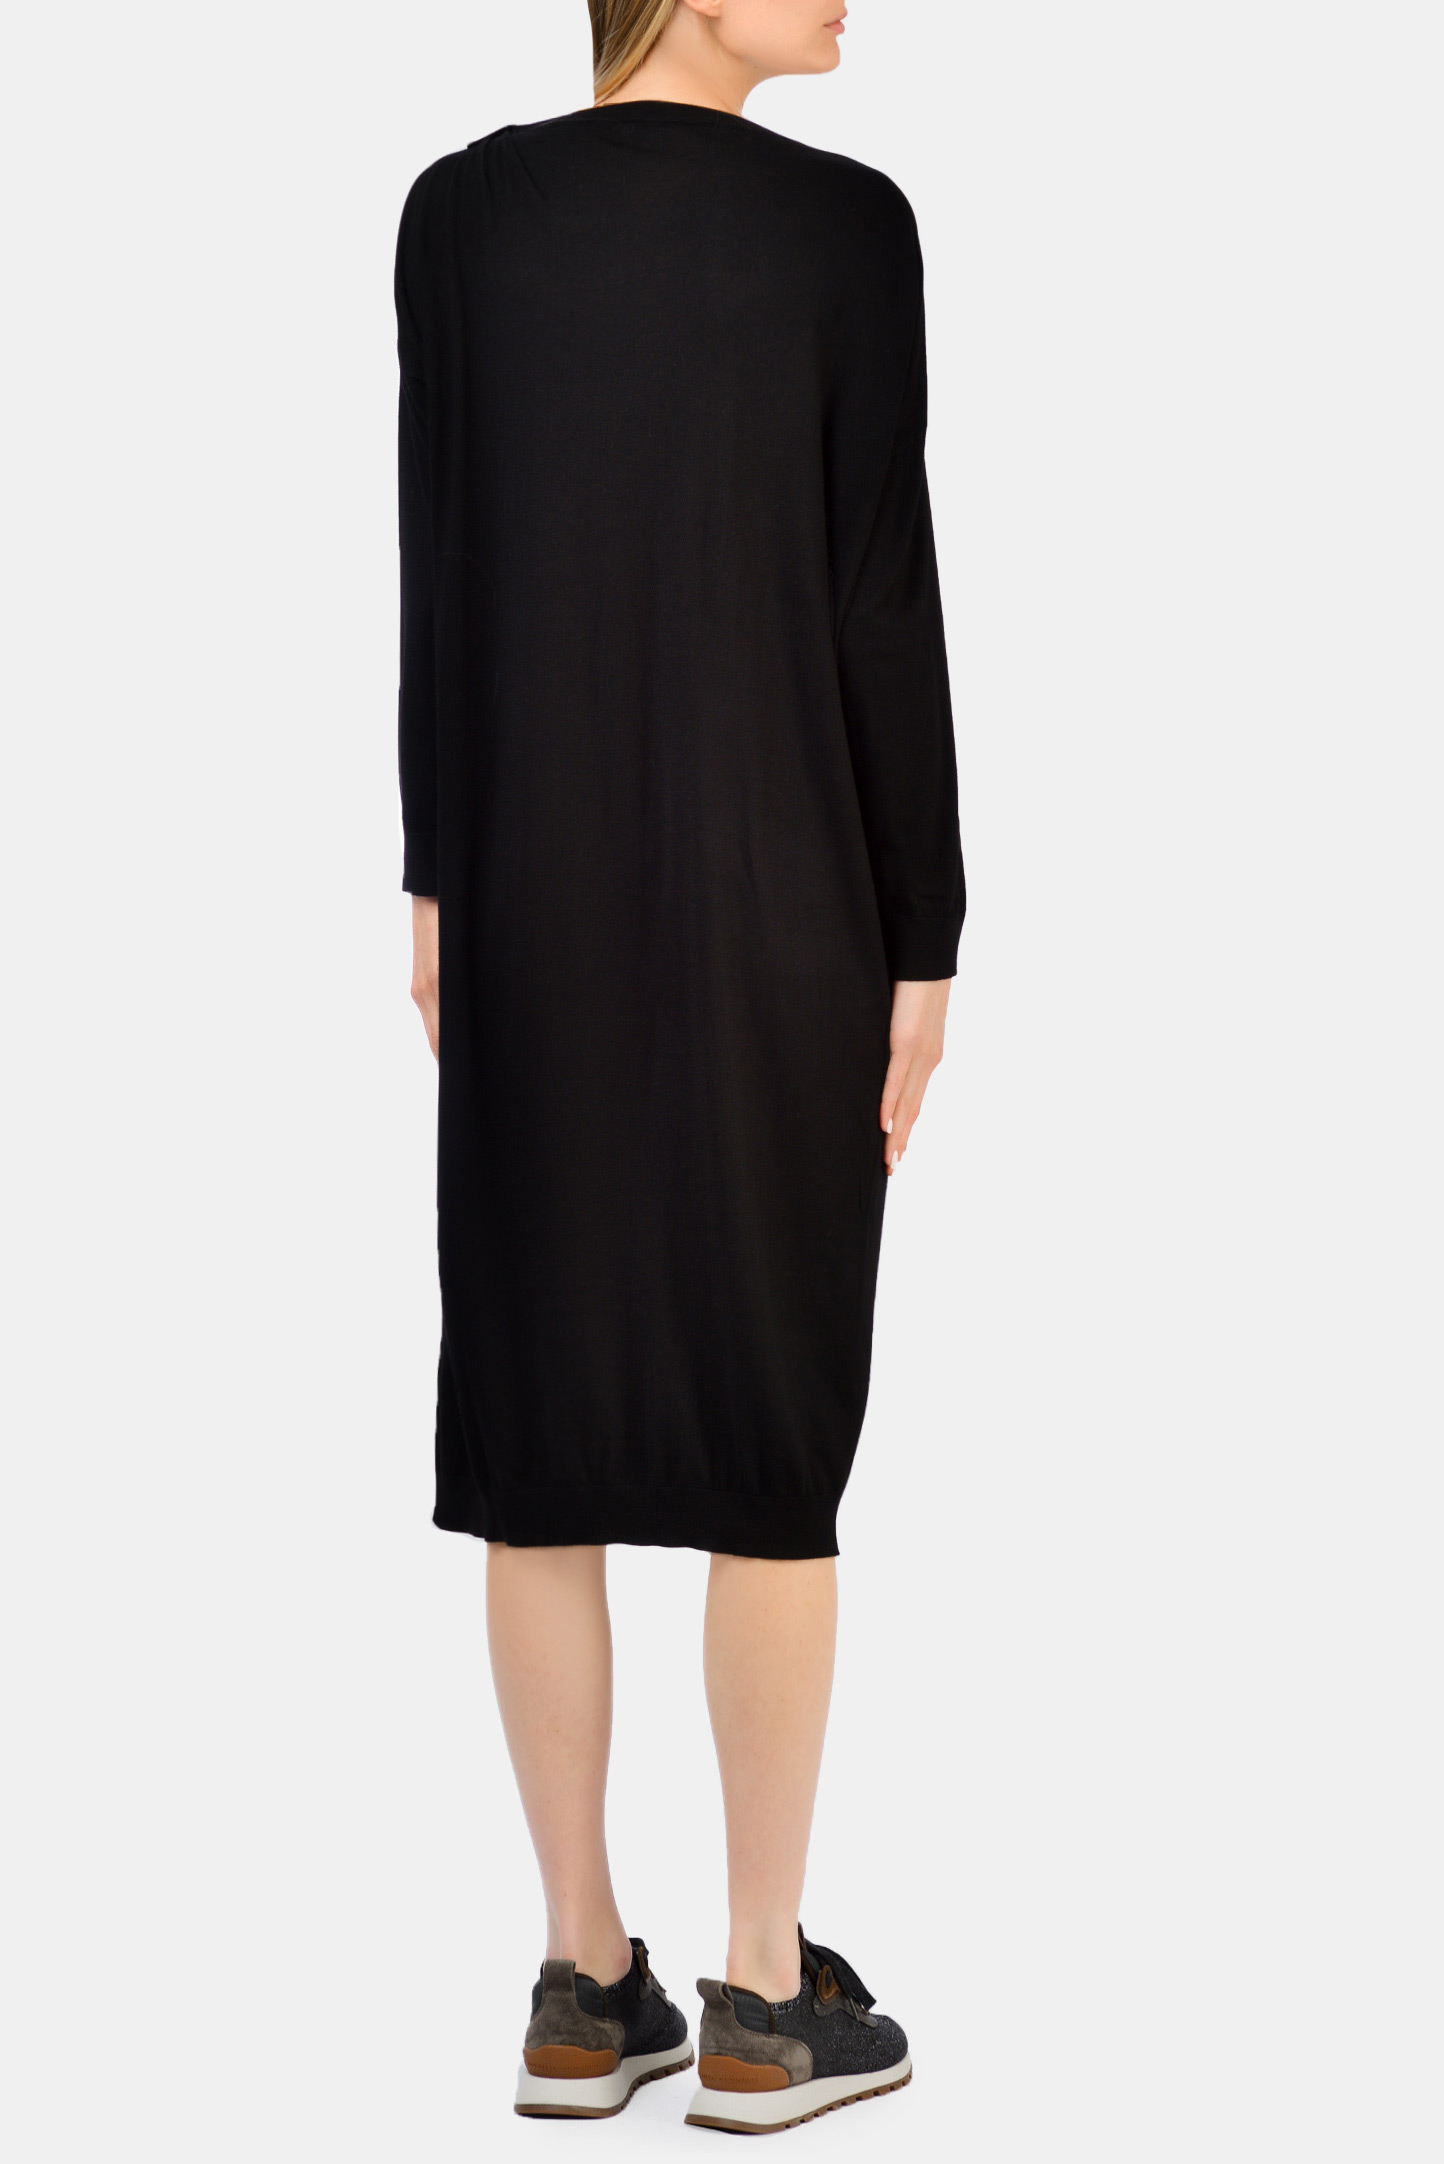 Платье BRUNELLO  CUCINELLI M14829A99P, цвет: Черный, Женский